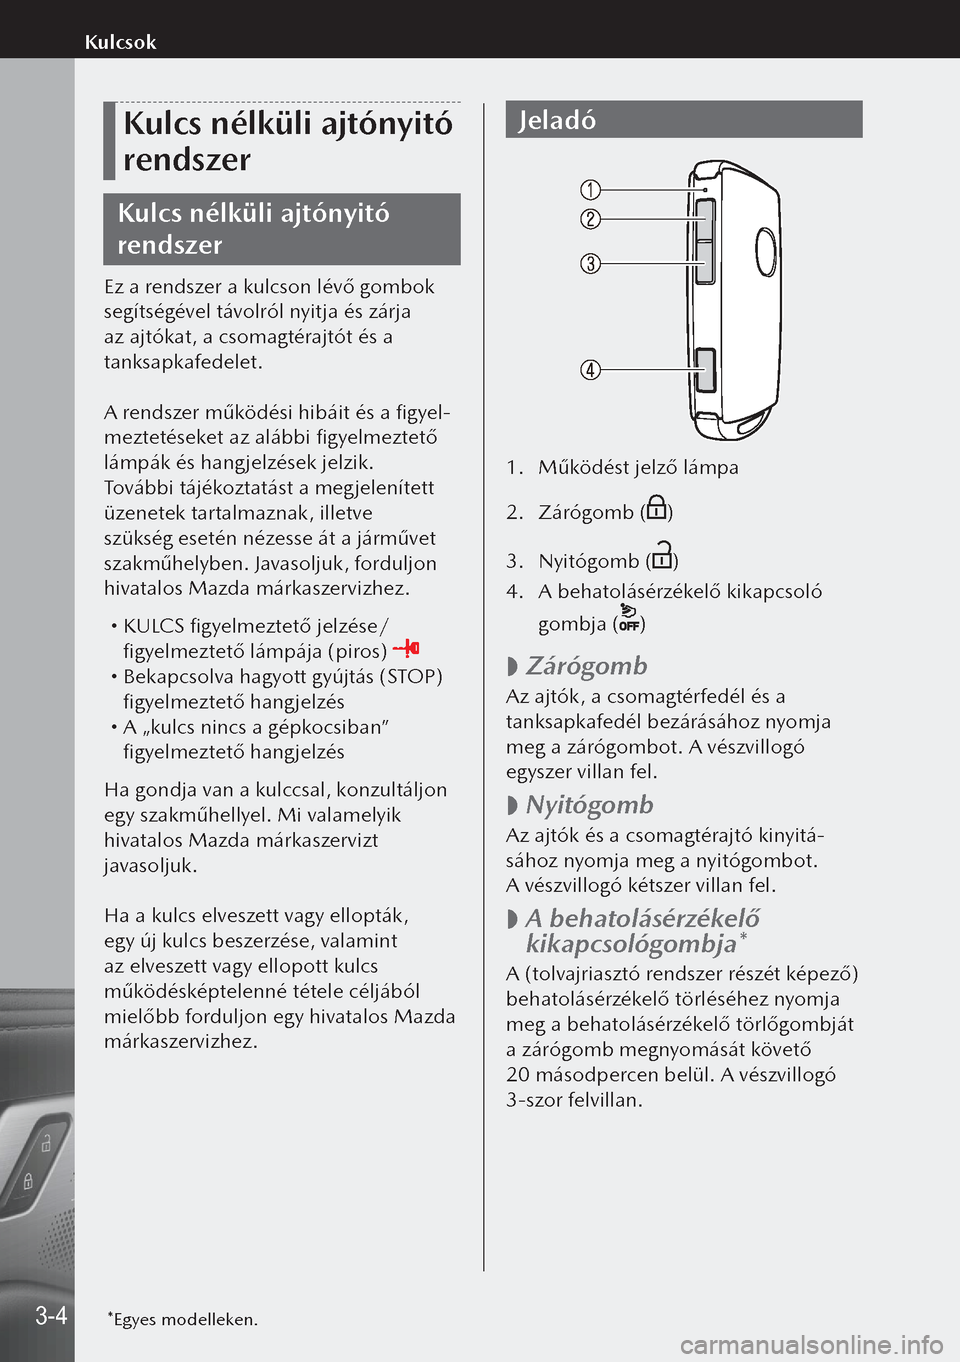 MAZDA MODEL 3 HATCHBACK 2019  Kezelési útmutató (in Hungarian) Kulcs nélküli ajtónyitó 
rendszer
Kulcs nélküli ajtónyitó 
rendszer
Ez a rendszer a kulcson lévő gombok 
segítségével távolról nyitja és zárja 
az ajtókat, a csomagtérajtót és a 
